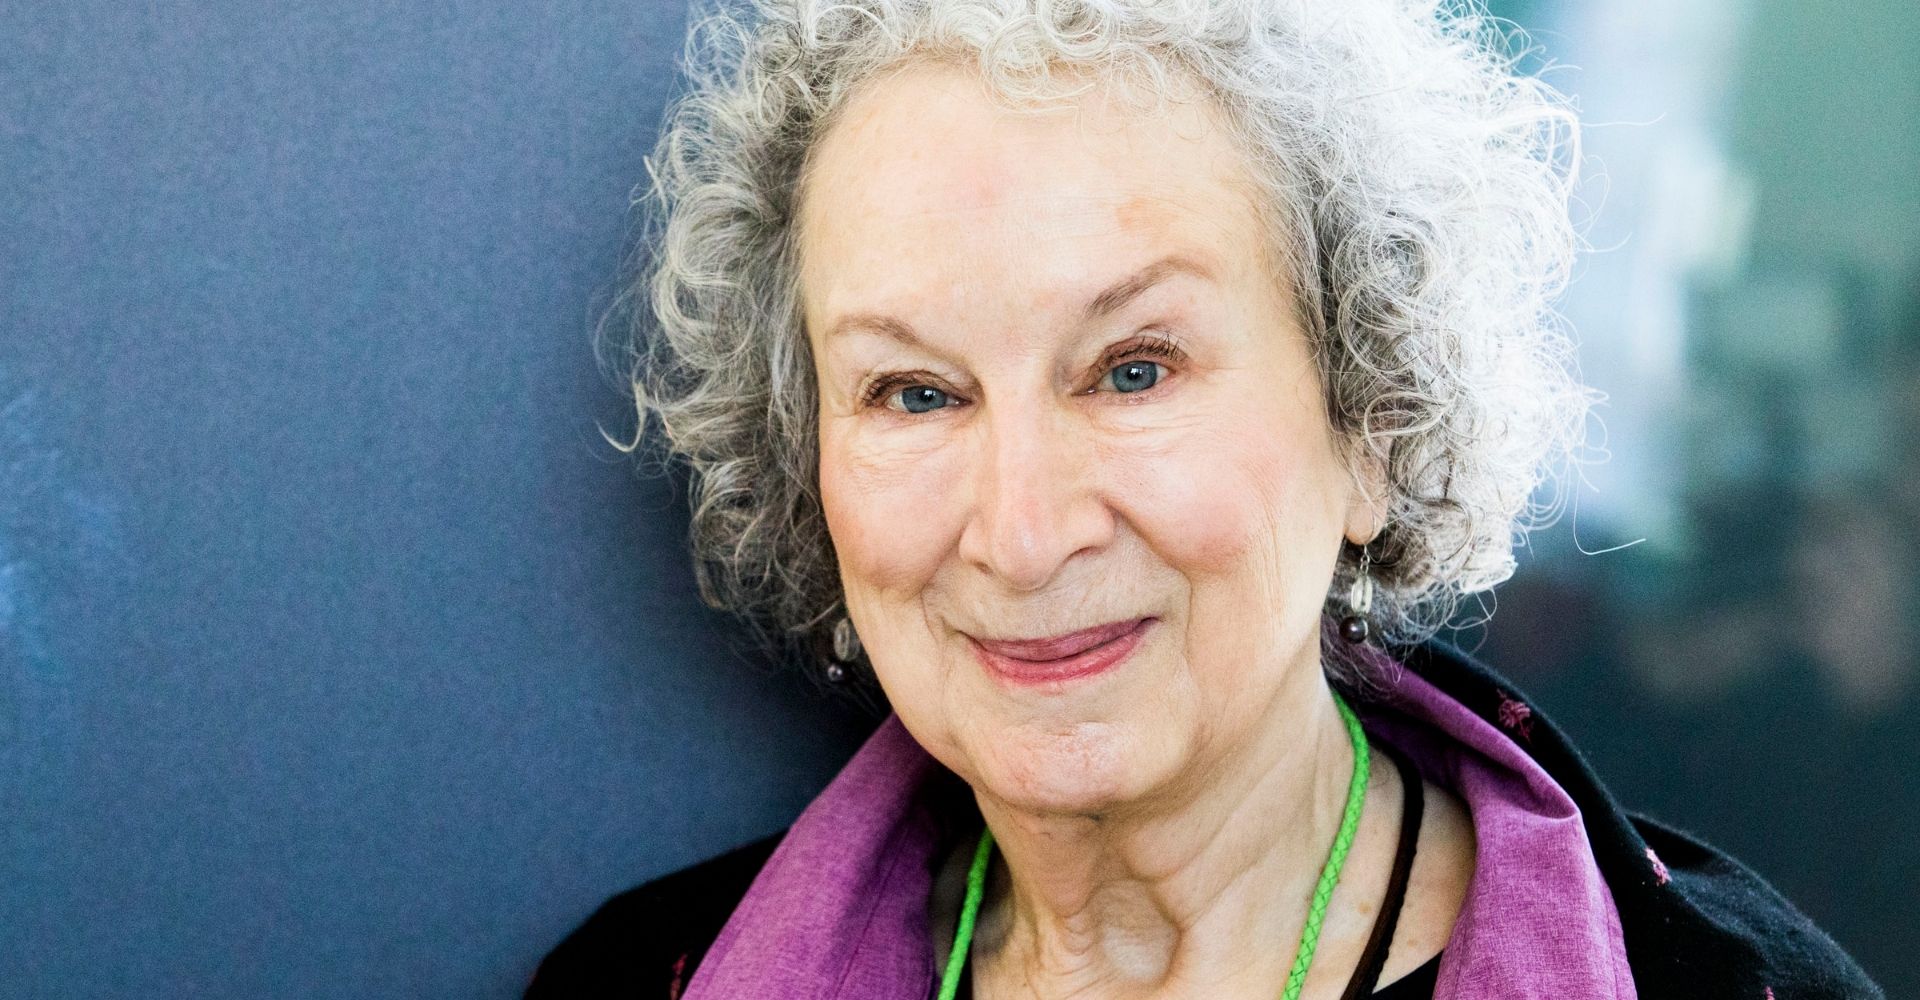 Le riflessioni di Margaret Atwood sui tempi che corrono sono “Questioni scottanti”